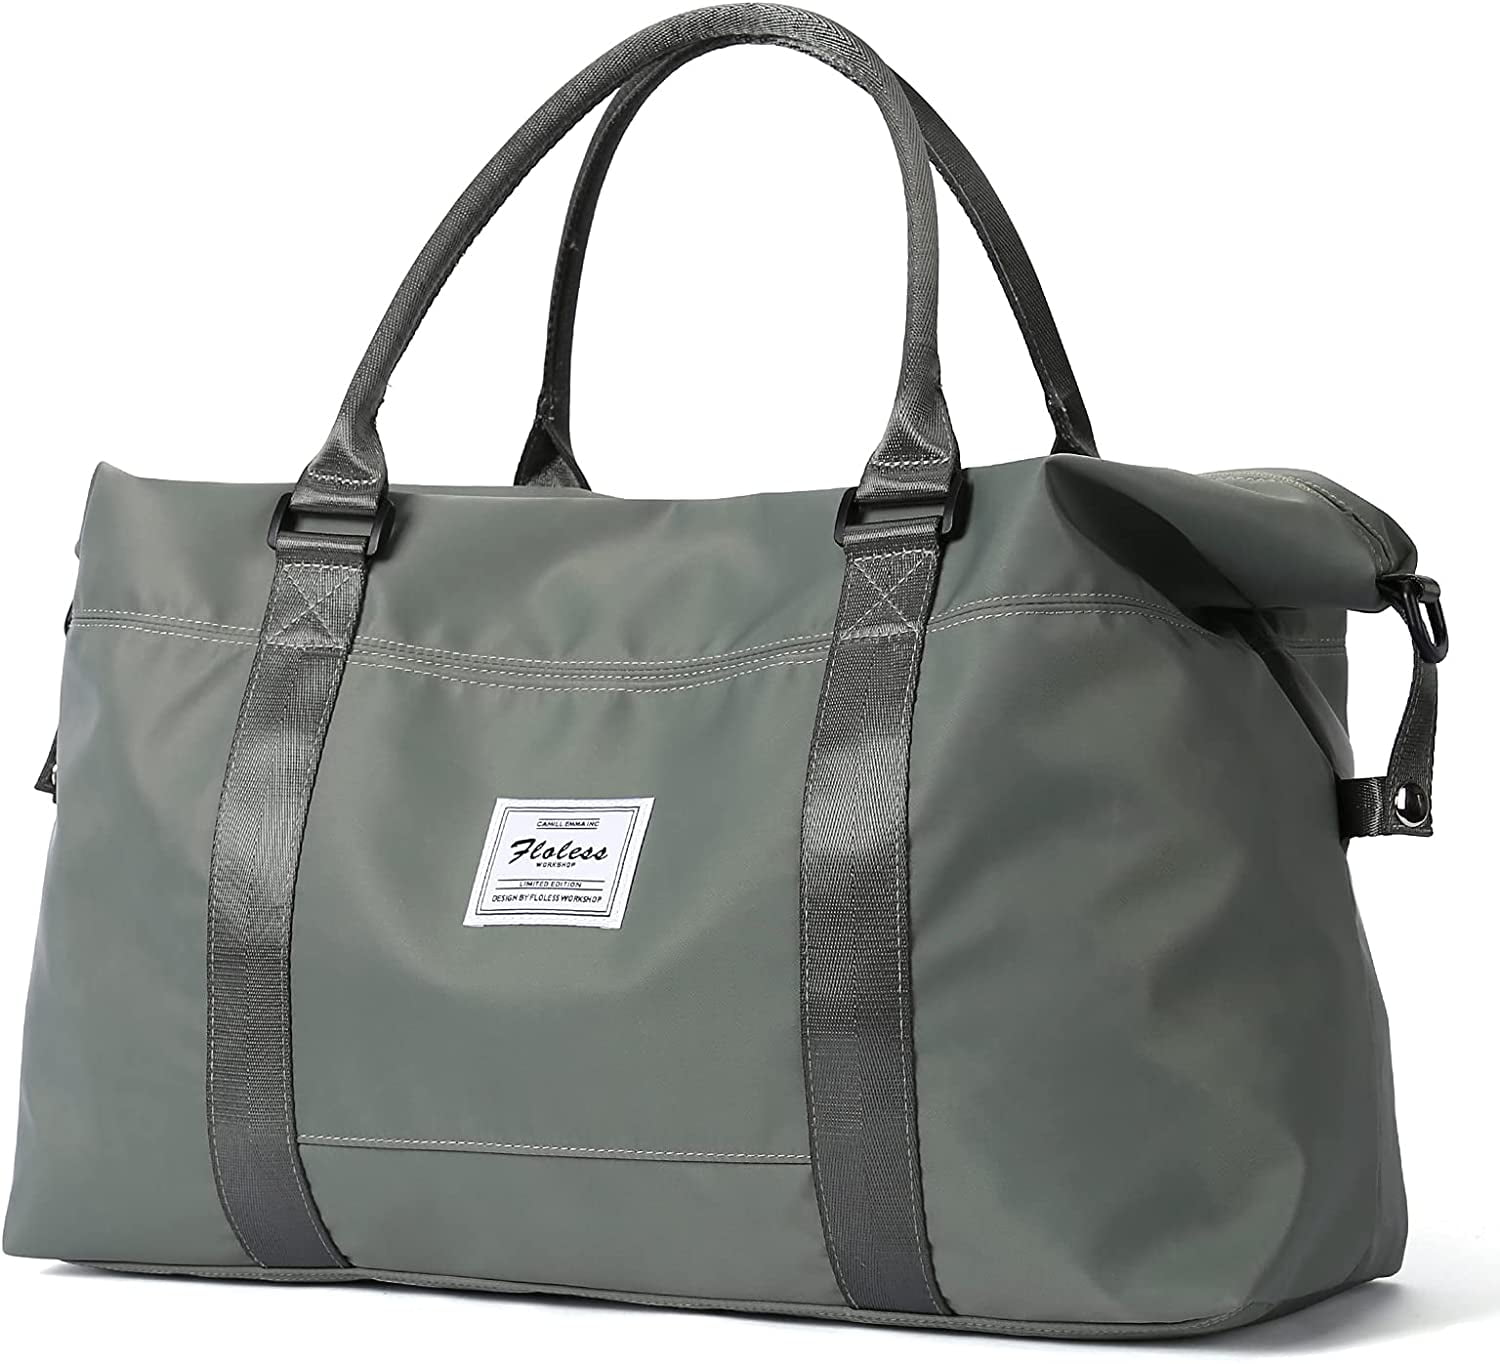 Travel Duffel Bag,Sports Tote Gym Bag,Shoulder Weekender Overnight Bag for Women 